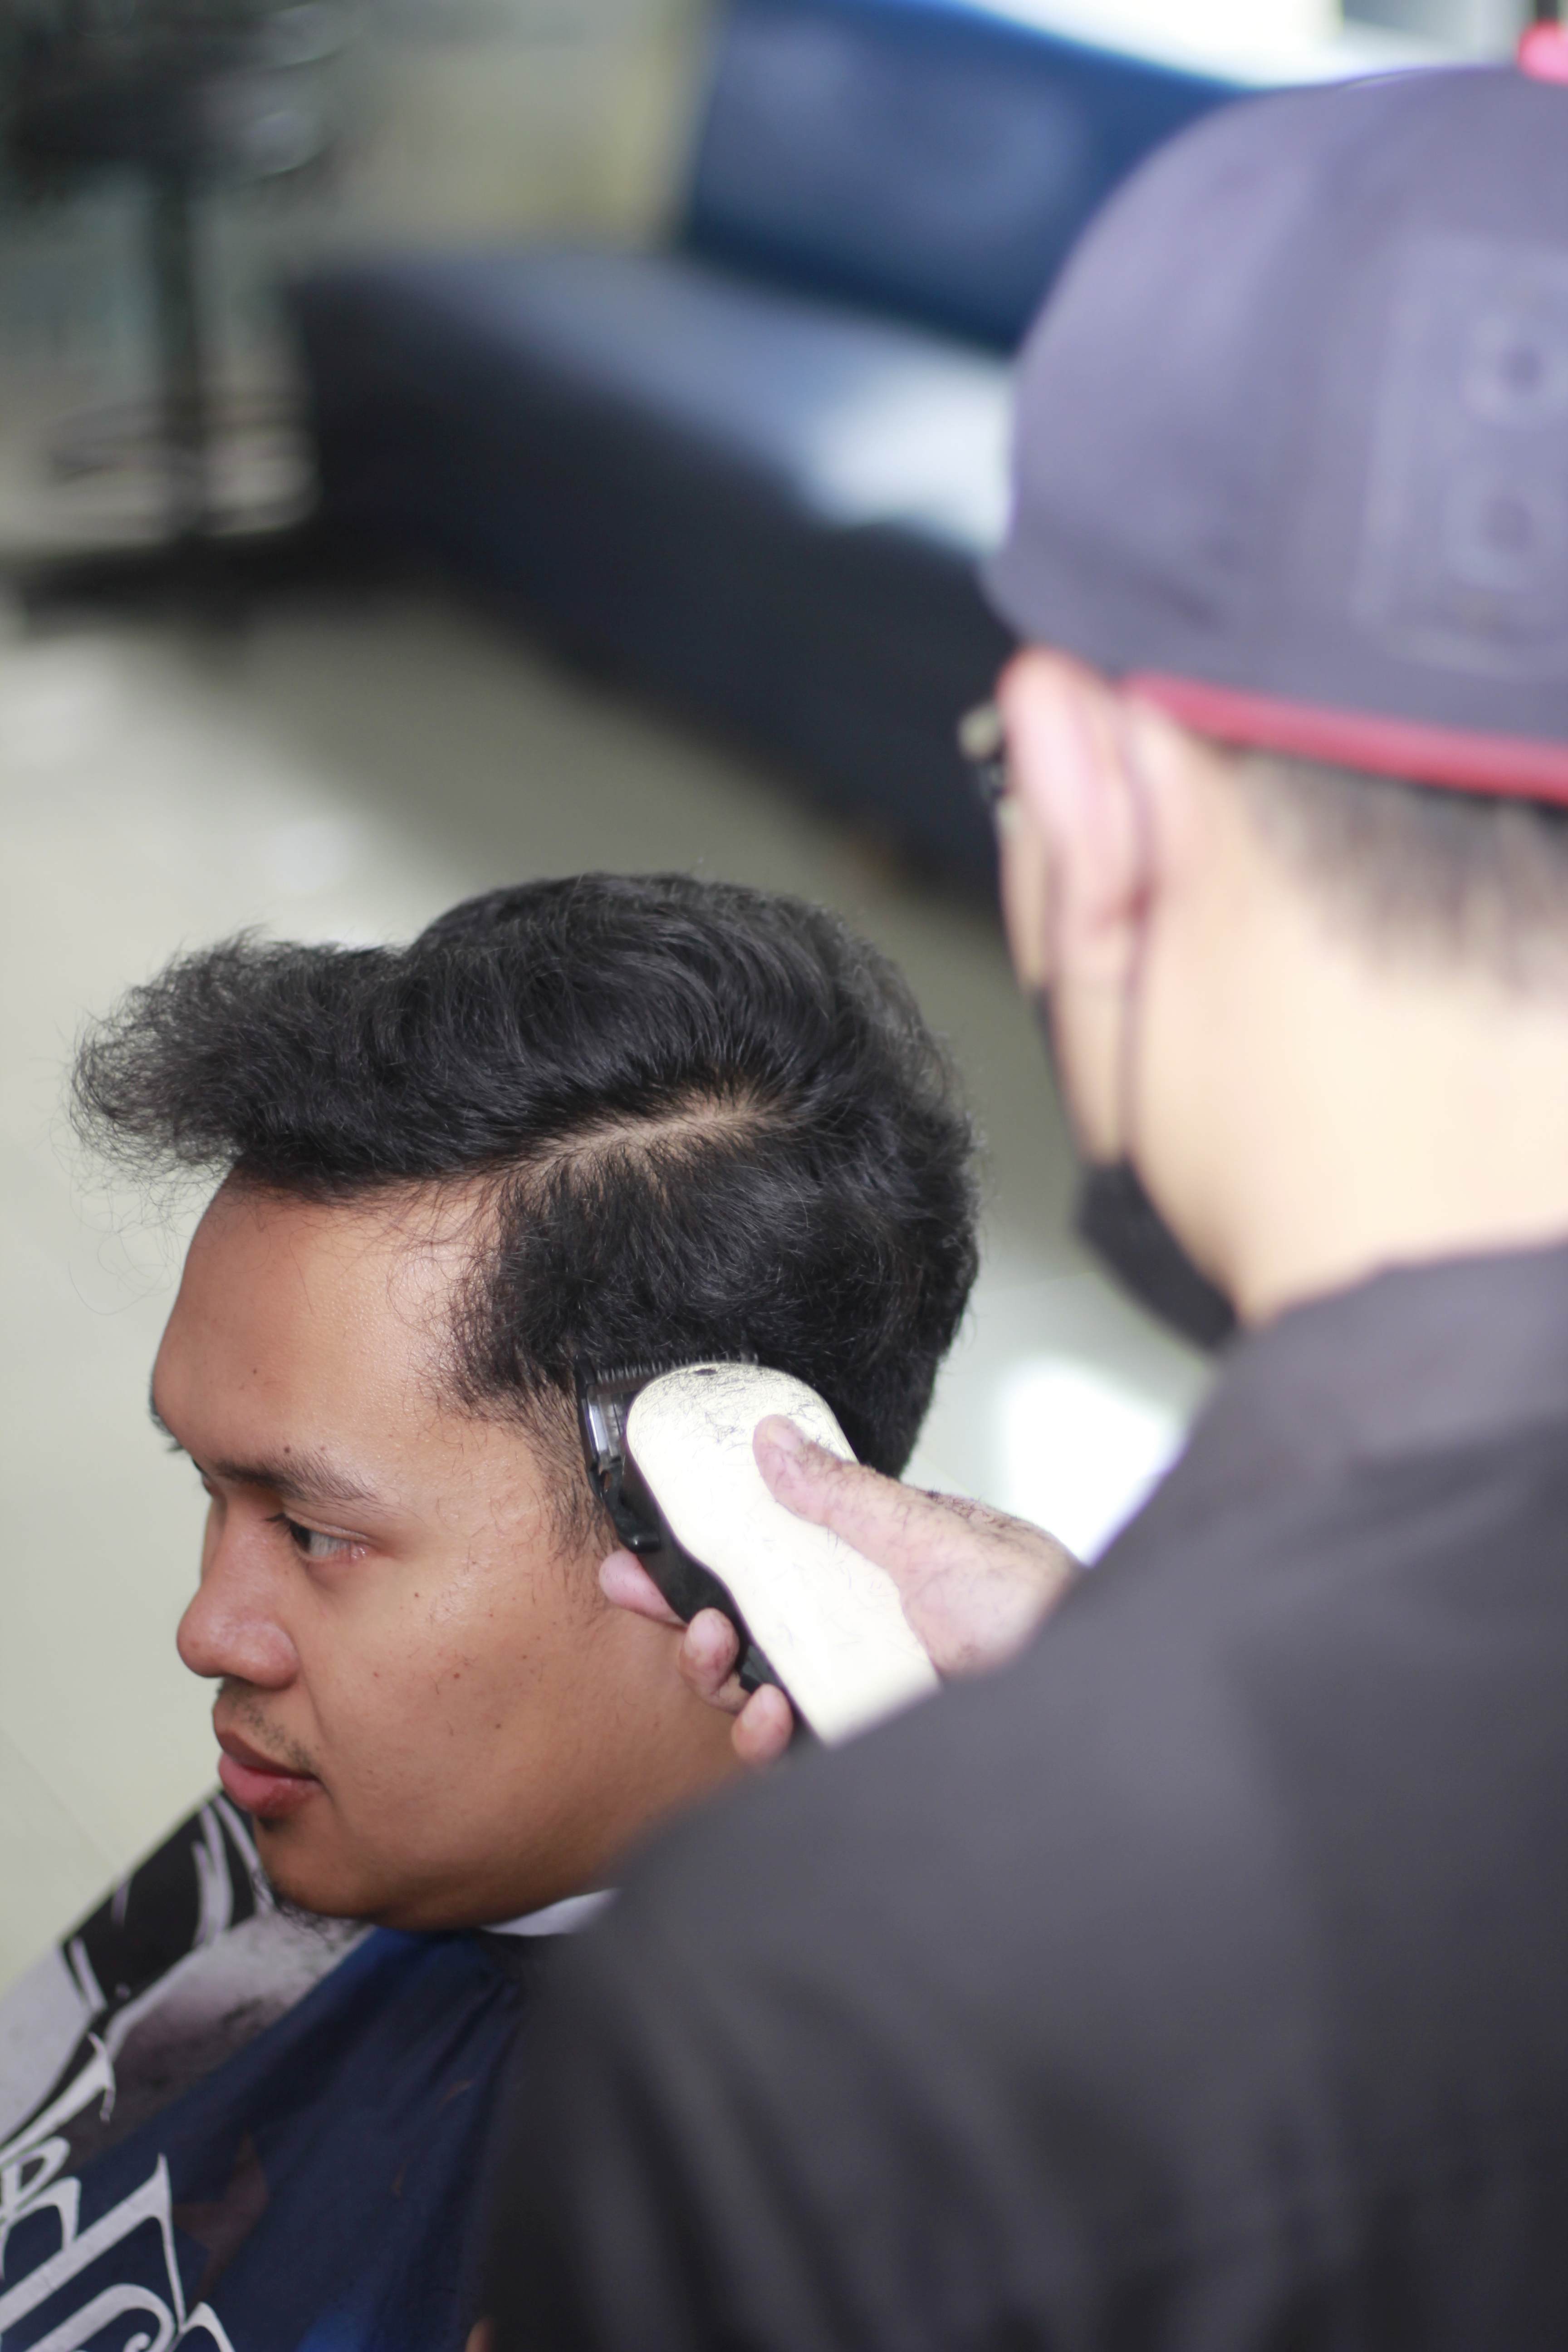 Harga Cukur Rambut Di Kelurahan Tlogowaru Profesional